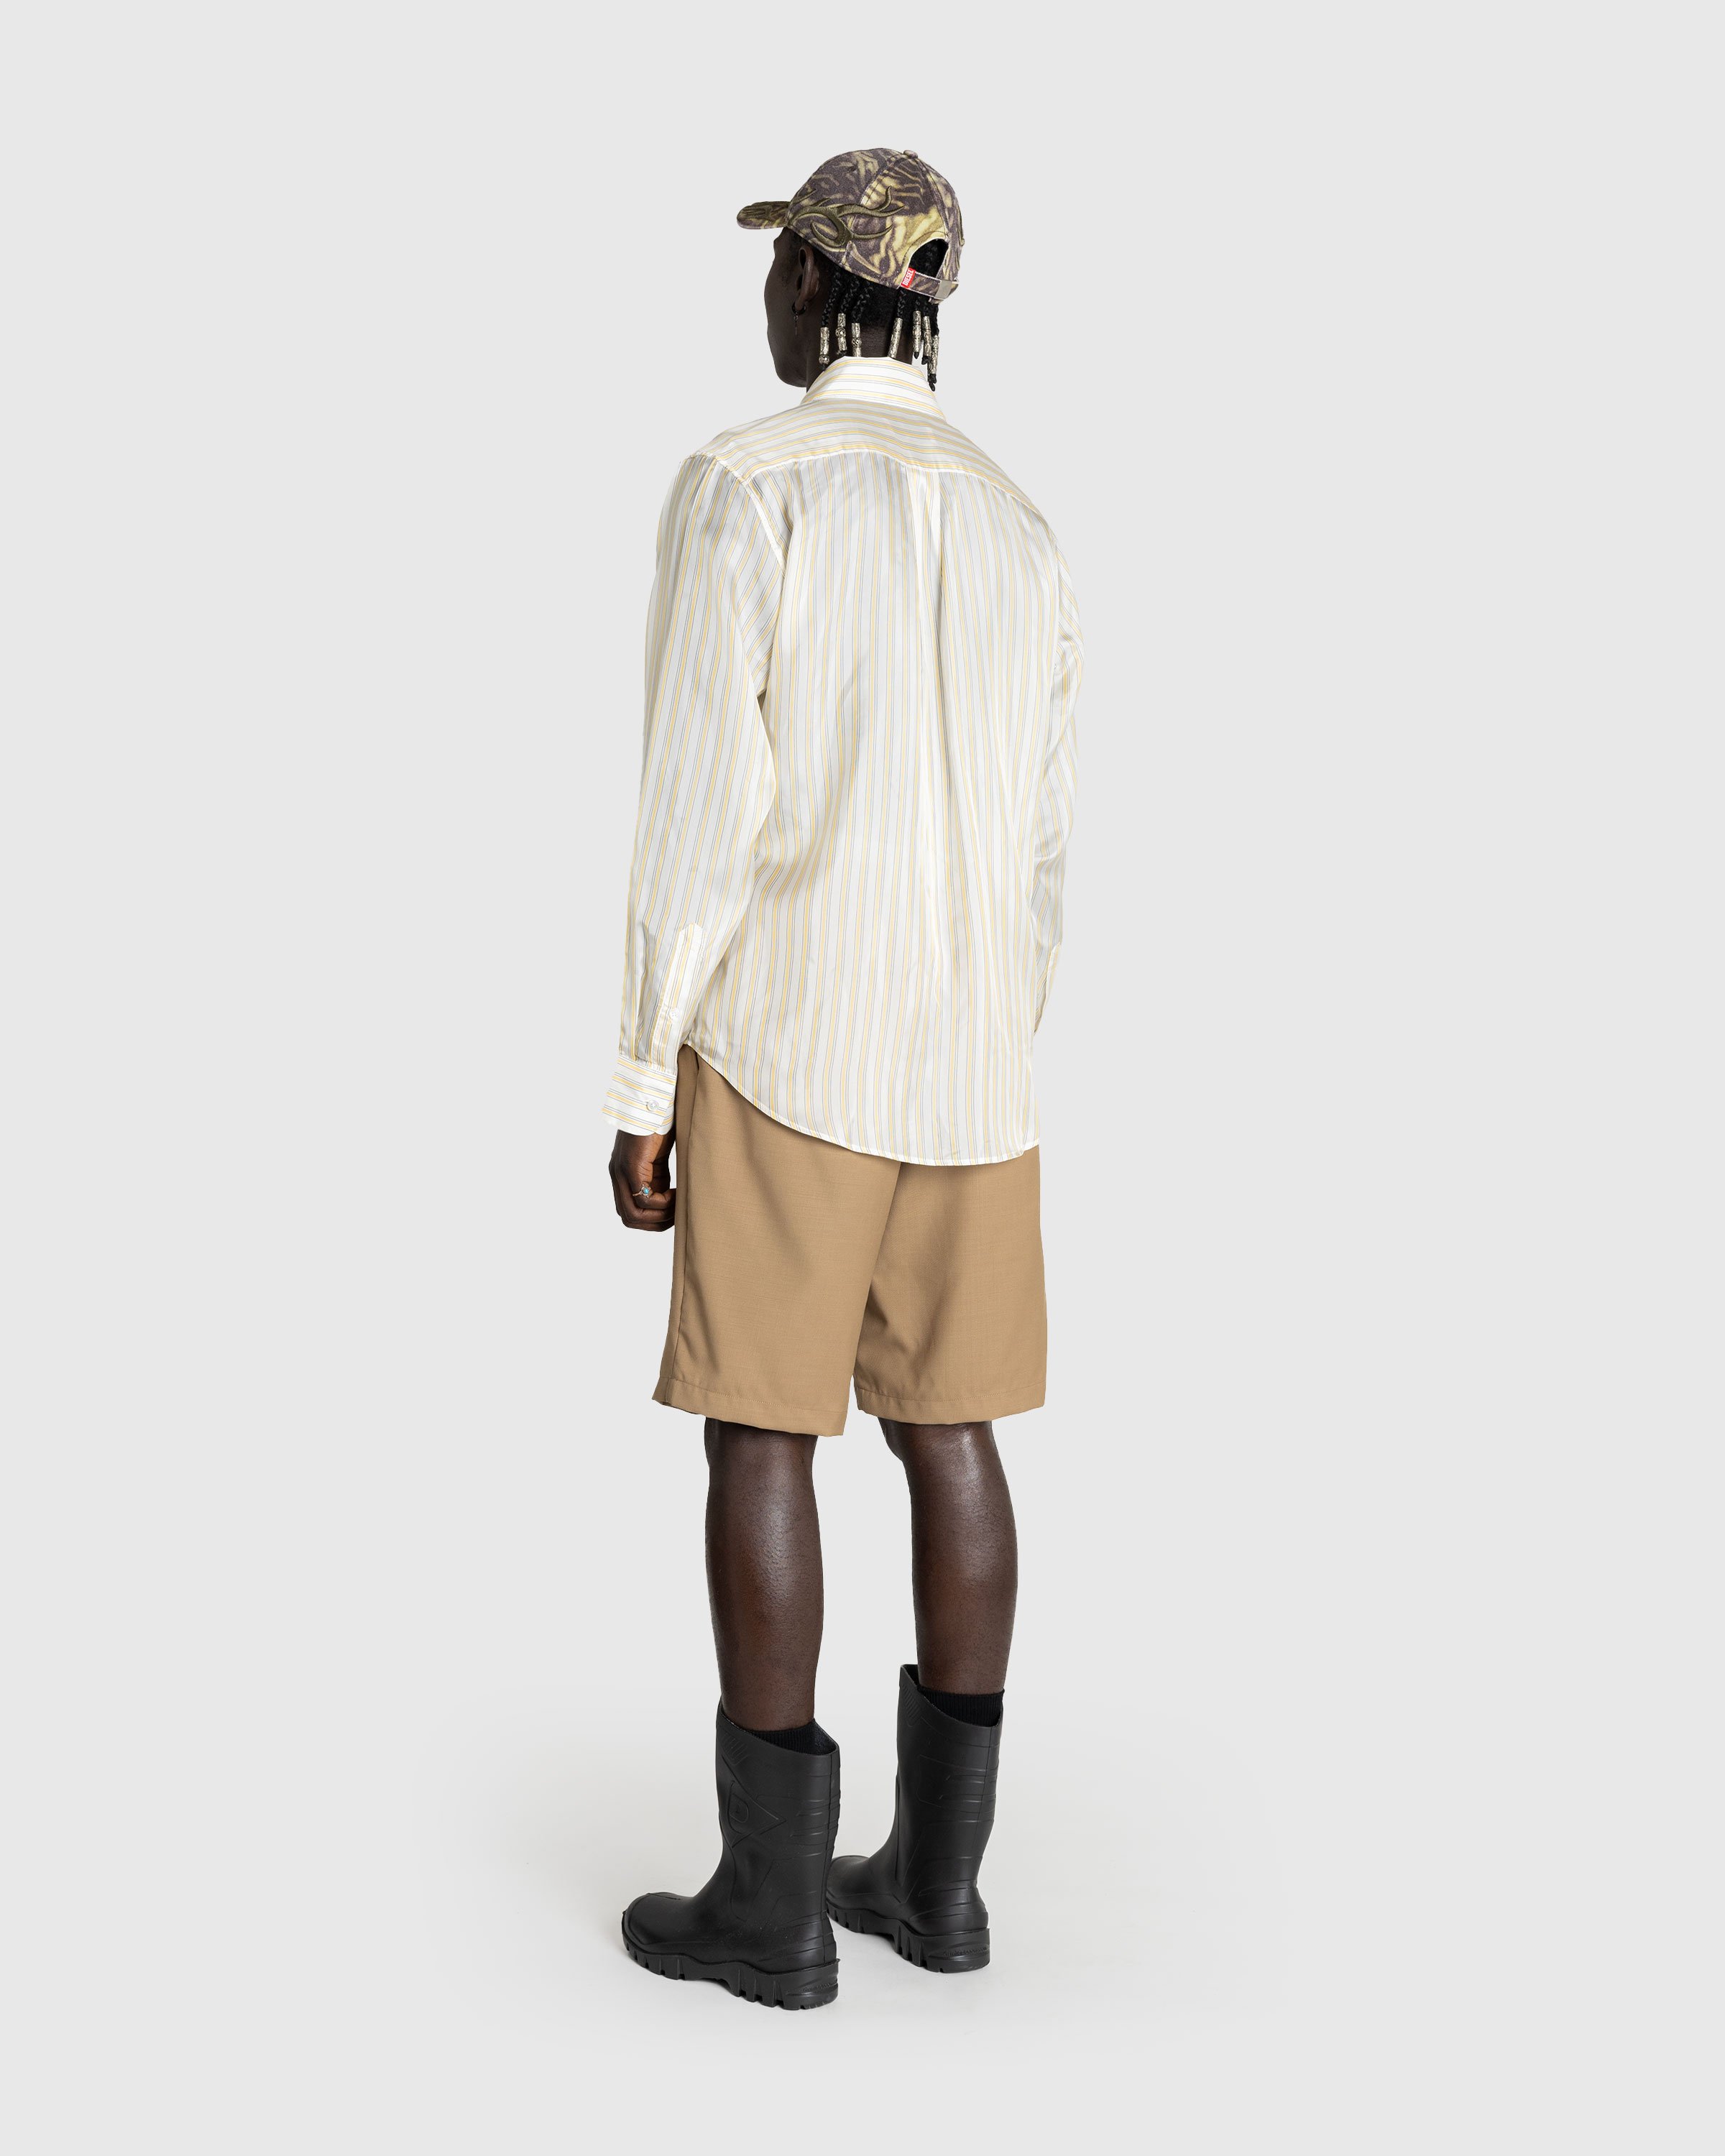 Martine Rose - Classic Shirt Yellow/White Stripe - Clothing - Yellow - Image 4